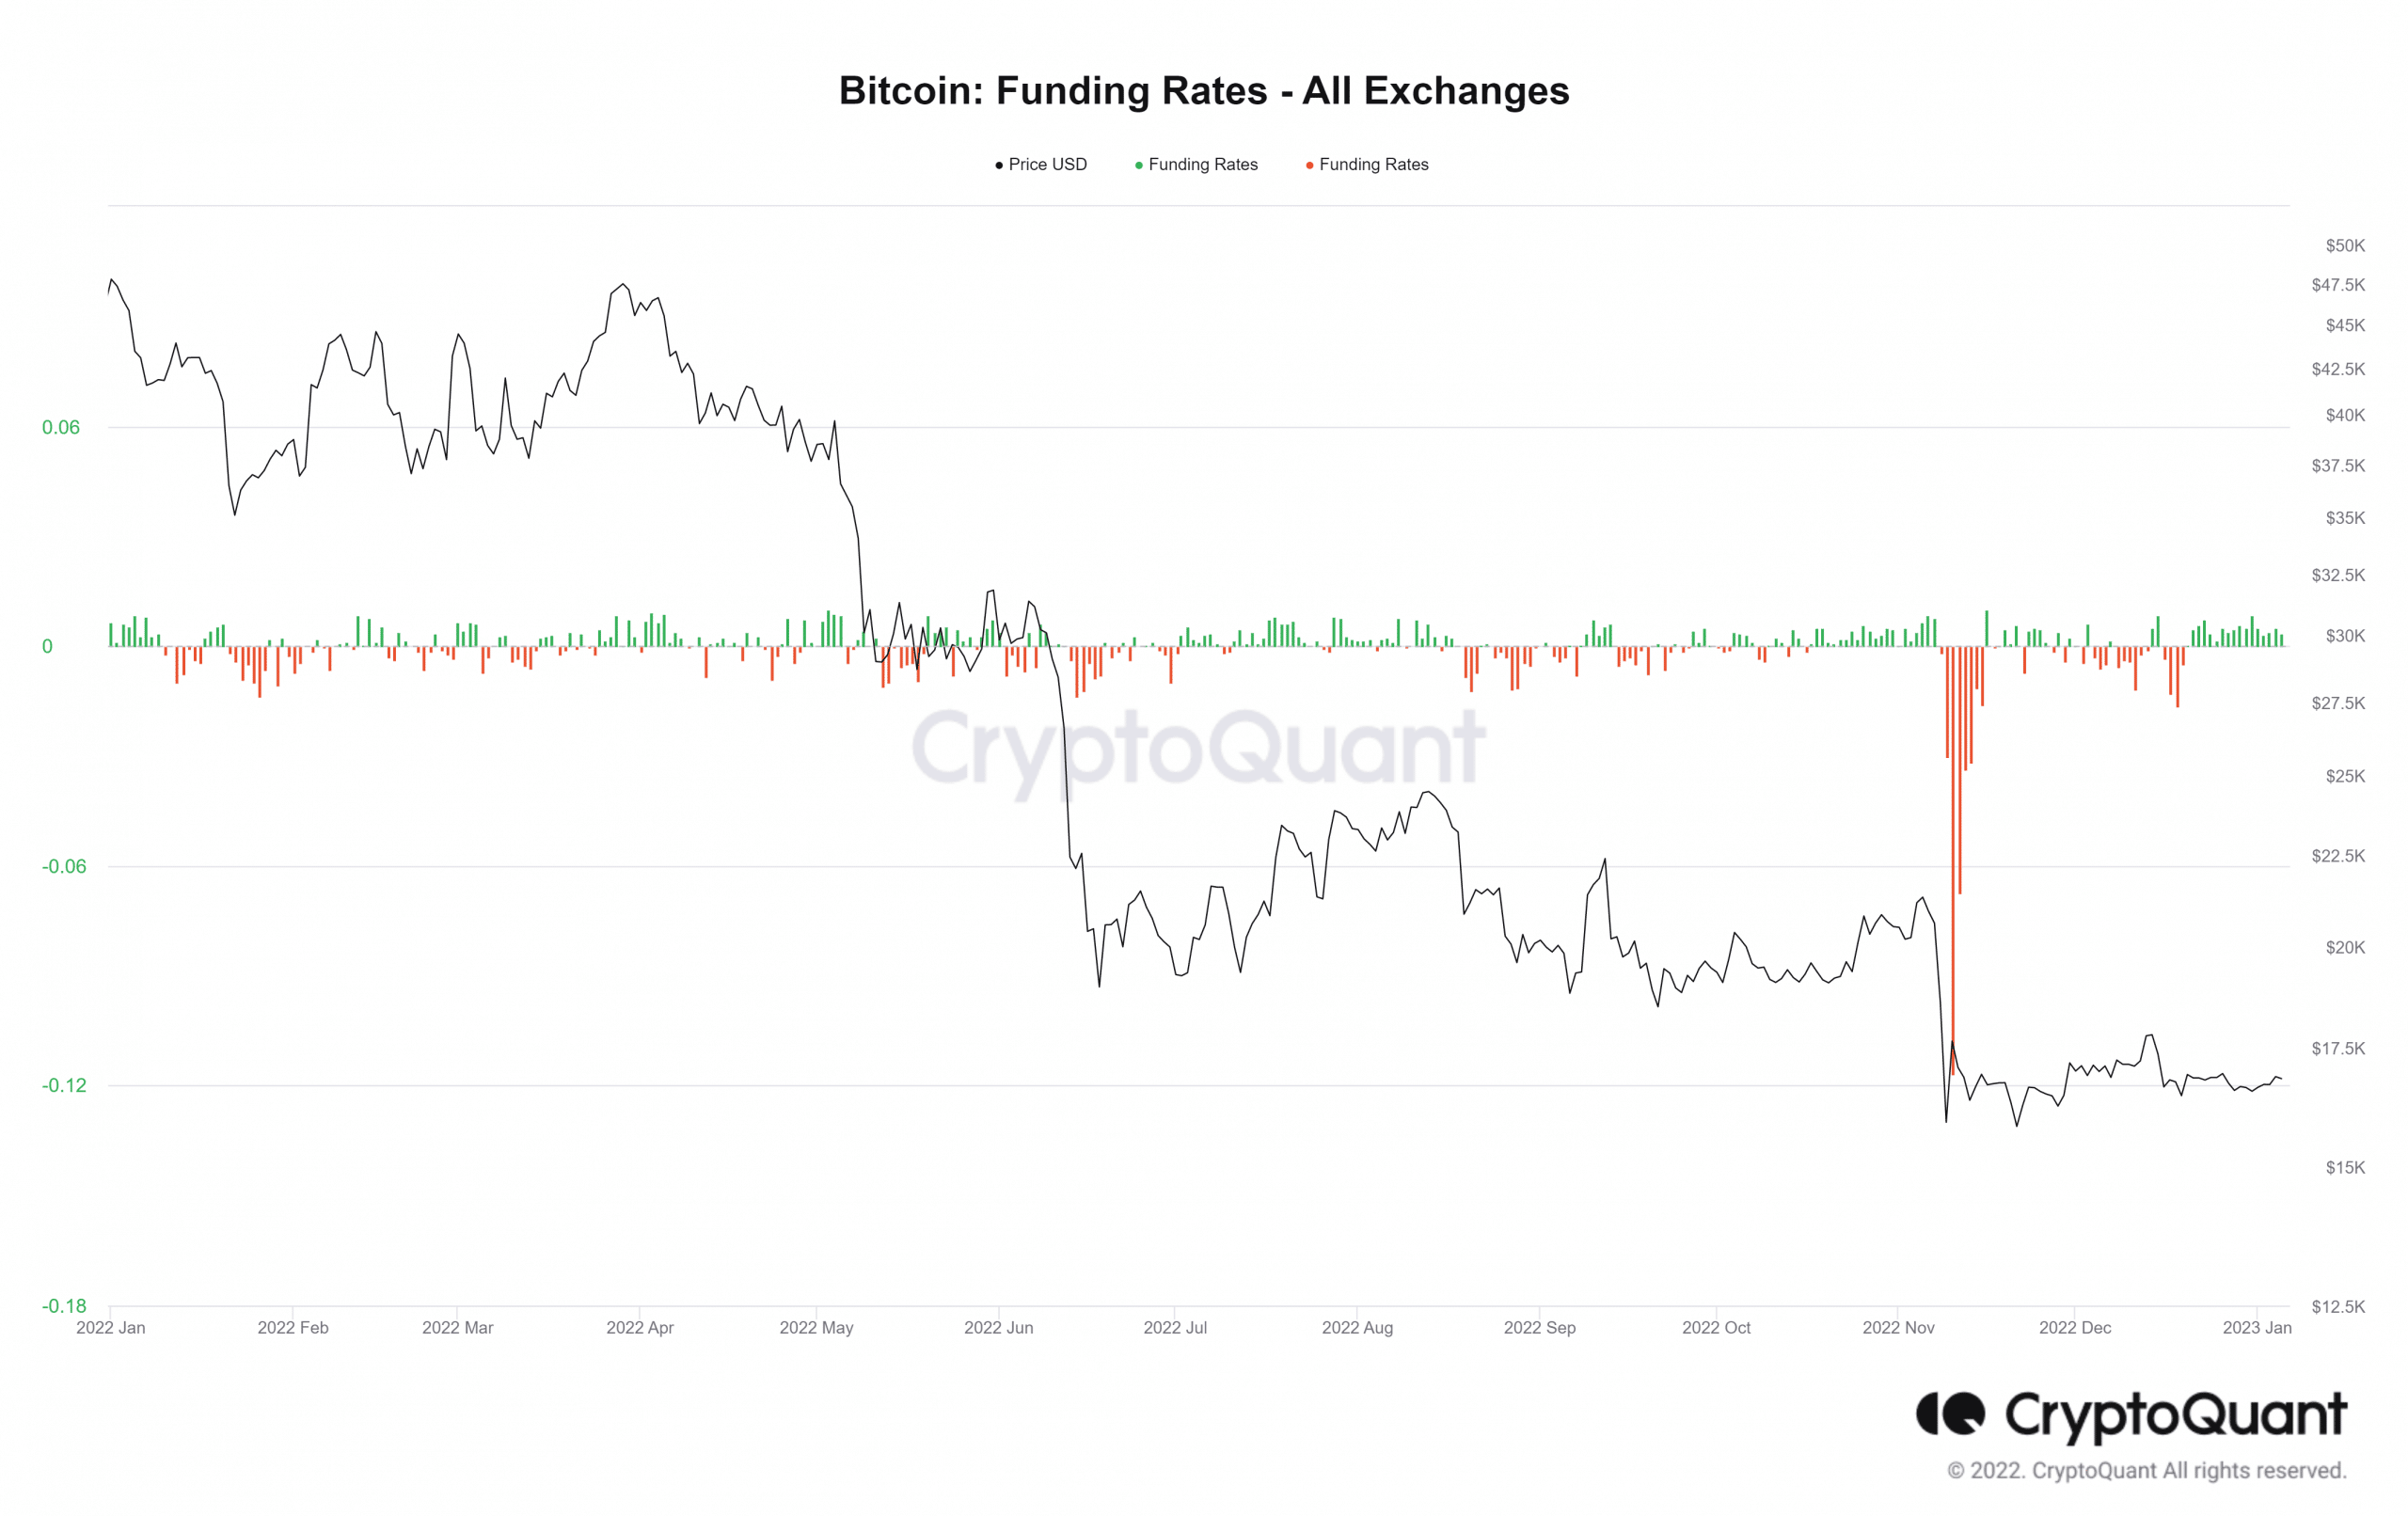 Bitcoin (BTC) funding rates